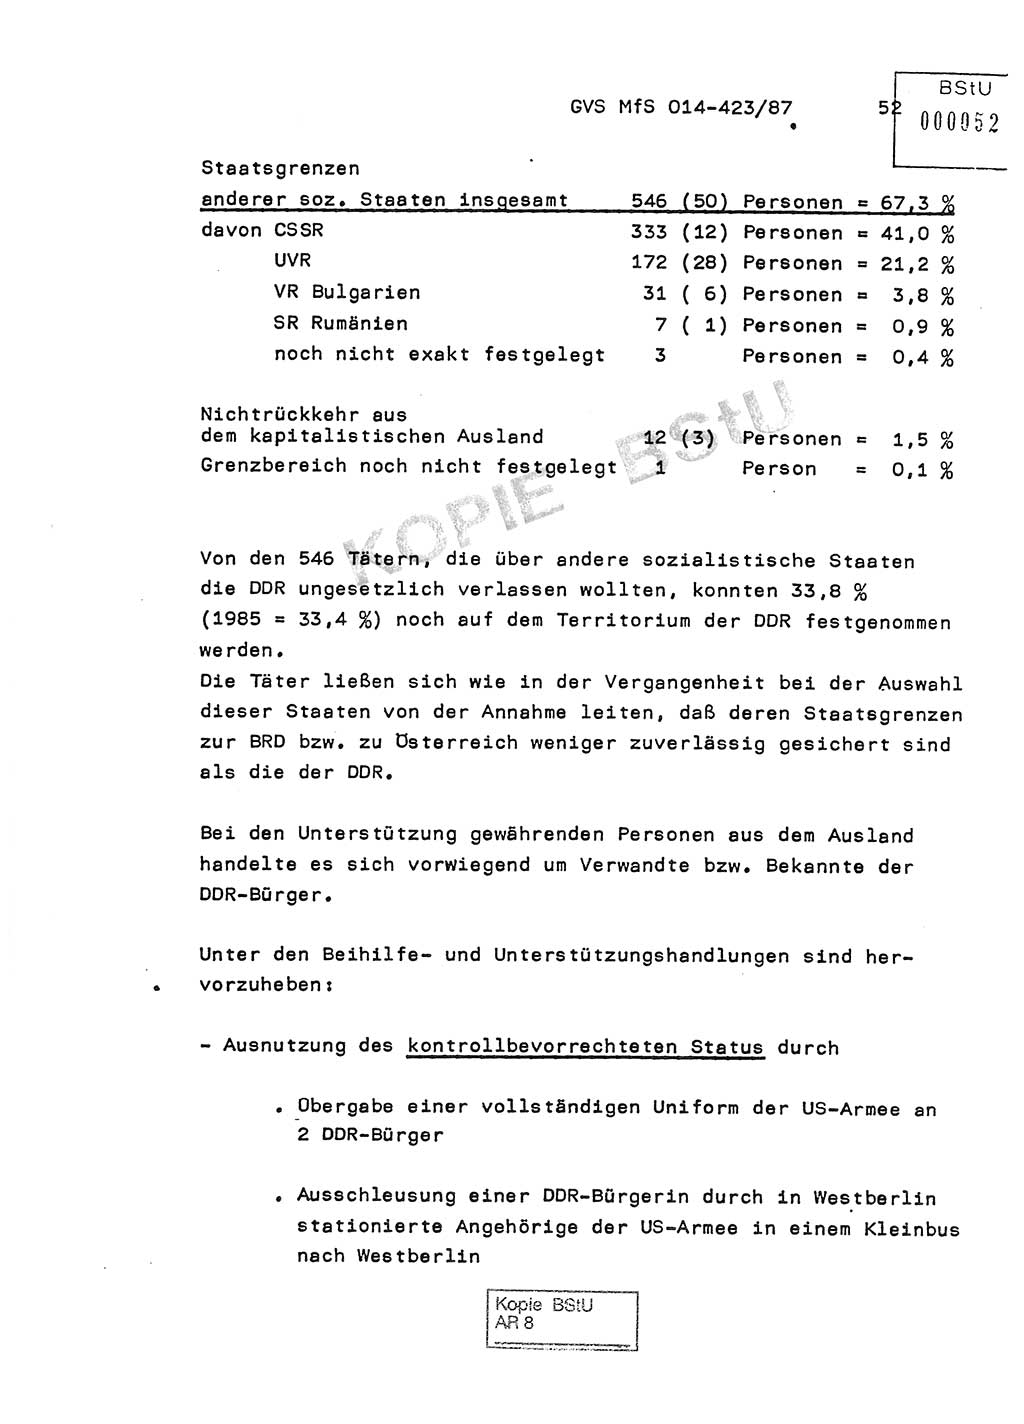 Jahresbericht der Hauptabteilung (HA) Ⅸ 1986, Einschätzung der Wirksamkeit der Untersuchungsarbeit im Jahre 1986, Ministerium für Staatssicherheit (MfS) der Deutschen Demokratischen Republik (DDR), Hauptabteilung Ⅸ, Geheime Verschlußsache (GVS) o014-423/87, Berlin 1987, Seite 52 (Einsch. MfS DDR HA Ⅸ GVS o014-423/87 1986, S. 52)